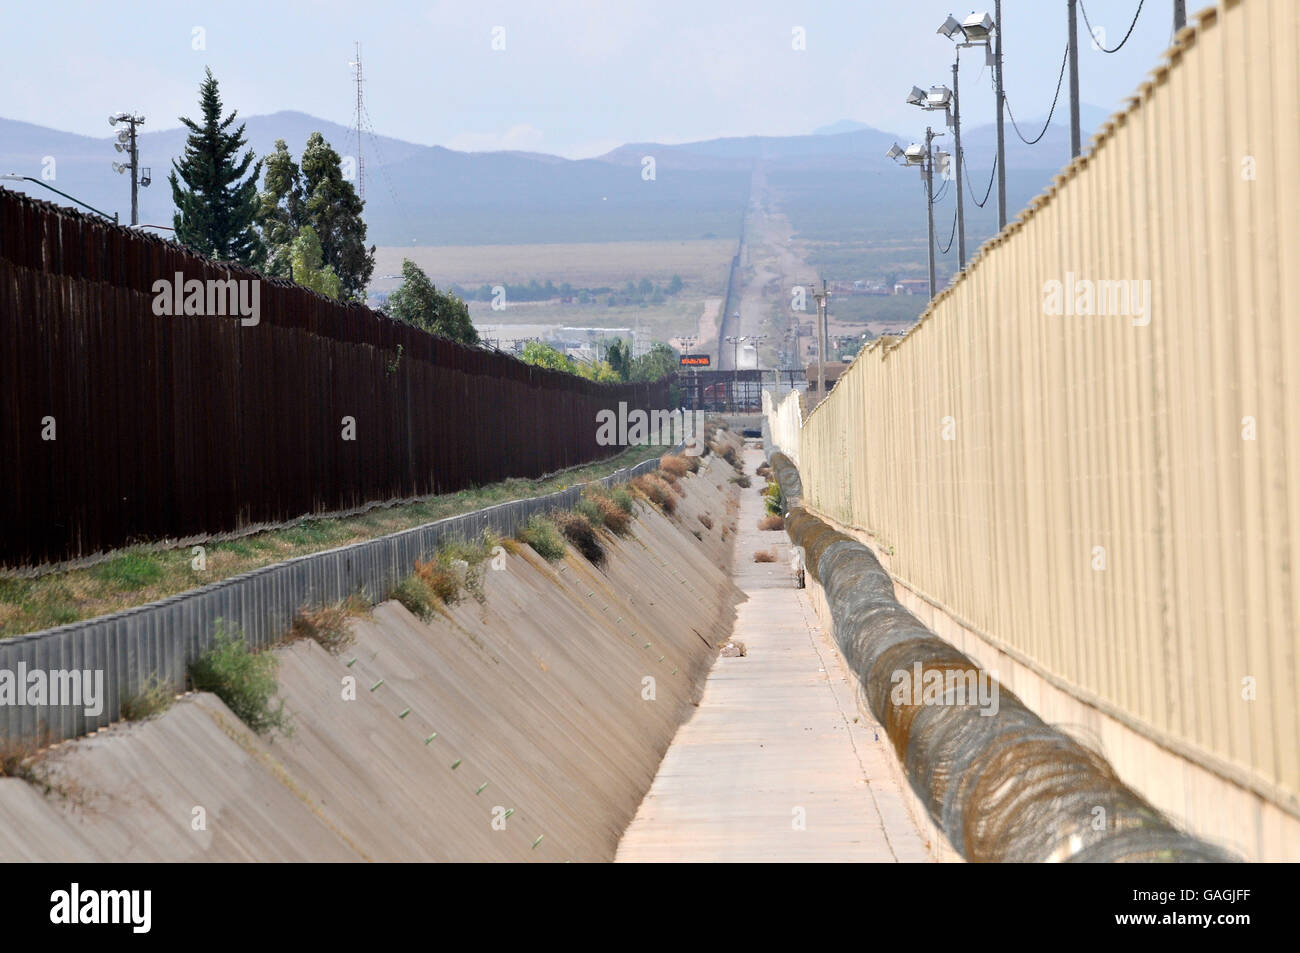 A culvert runs along the international border wall between Agua Prieta, Sonora, Mexico, and Douglas Arizona, USA, as seen from A Stock Photo